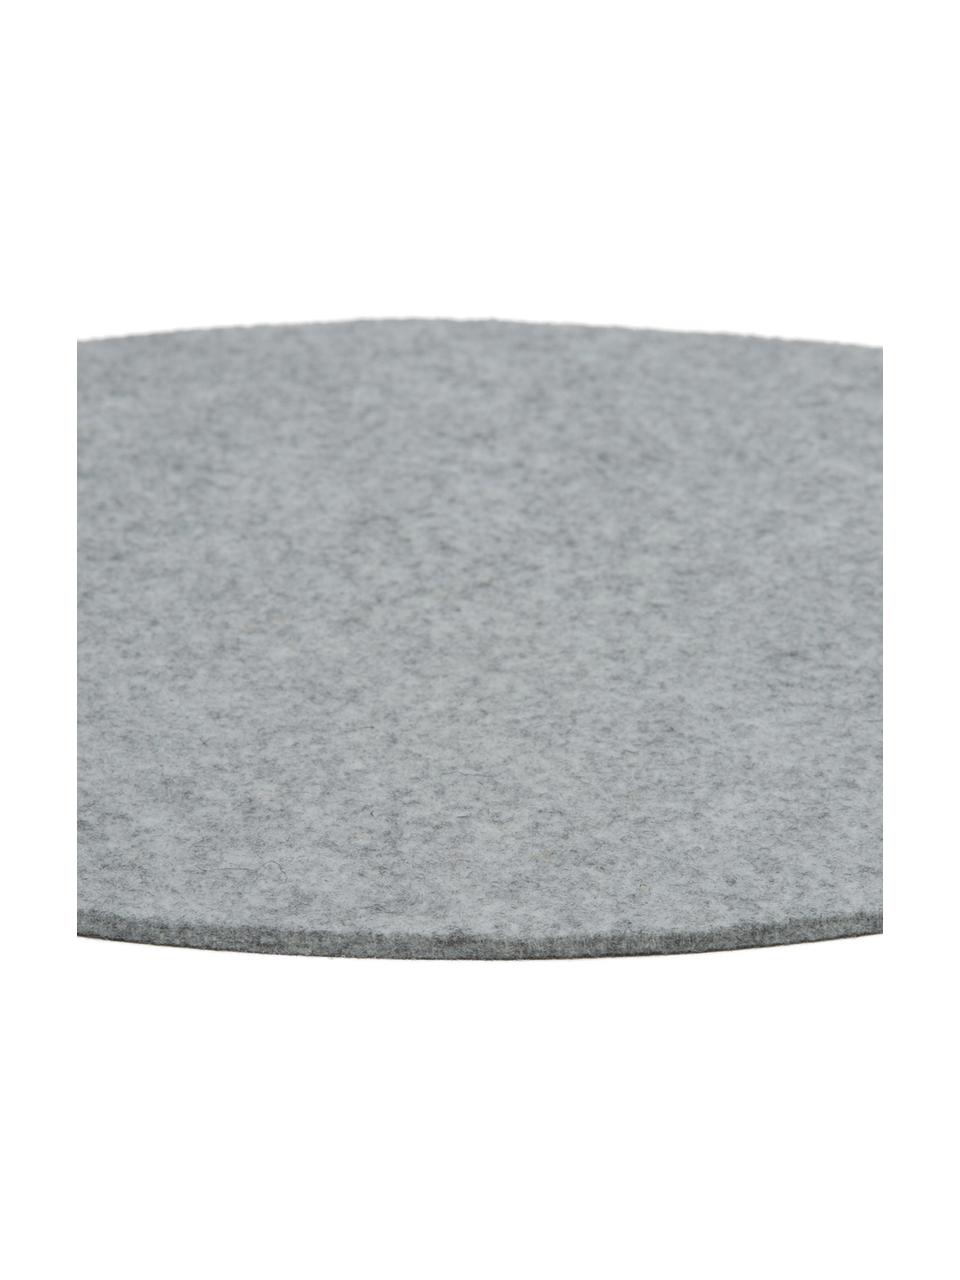 Runde Wollfilz-Tischsets Leandra, 4 Stück, 90% Wolle, 10% Polyethylen, Hellgrau, Ø 40 cm